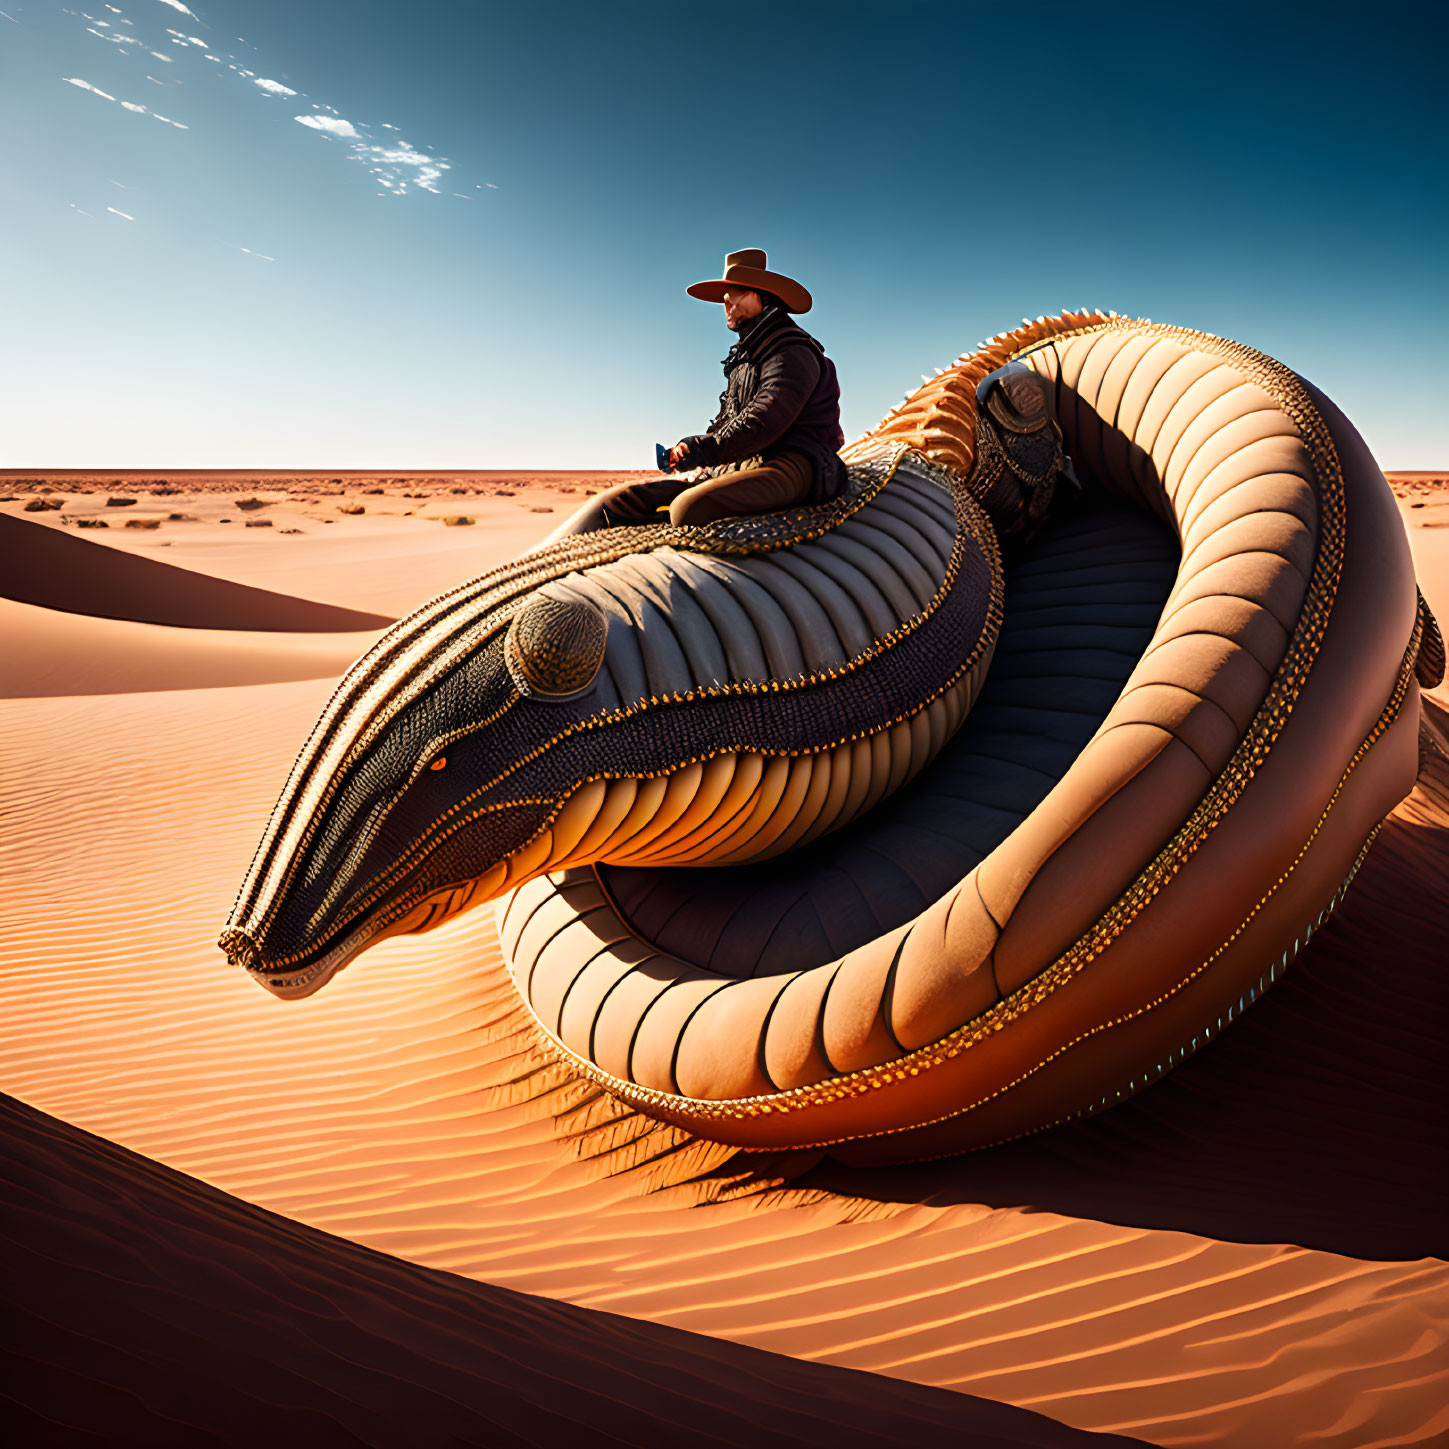 Cowboy Hat Person on Surreal Snake Sculpture in Desert Landscape